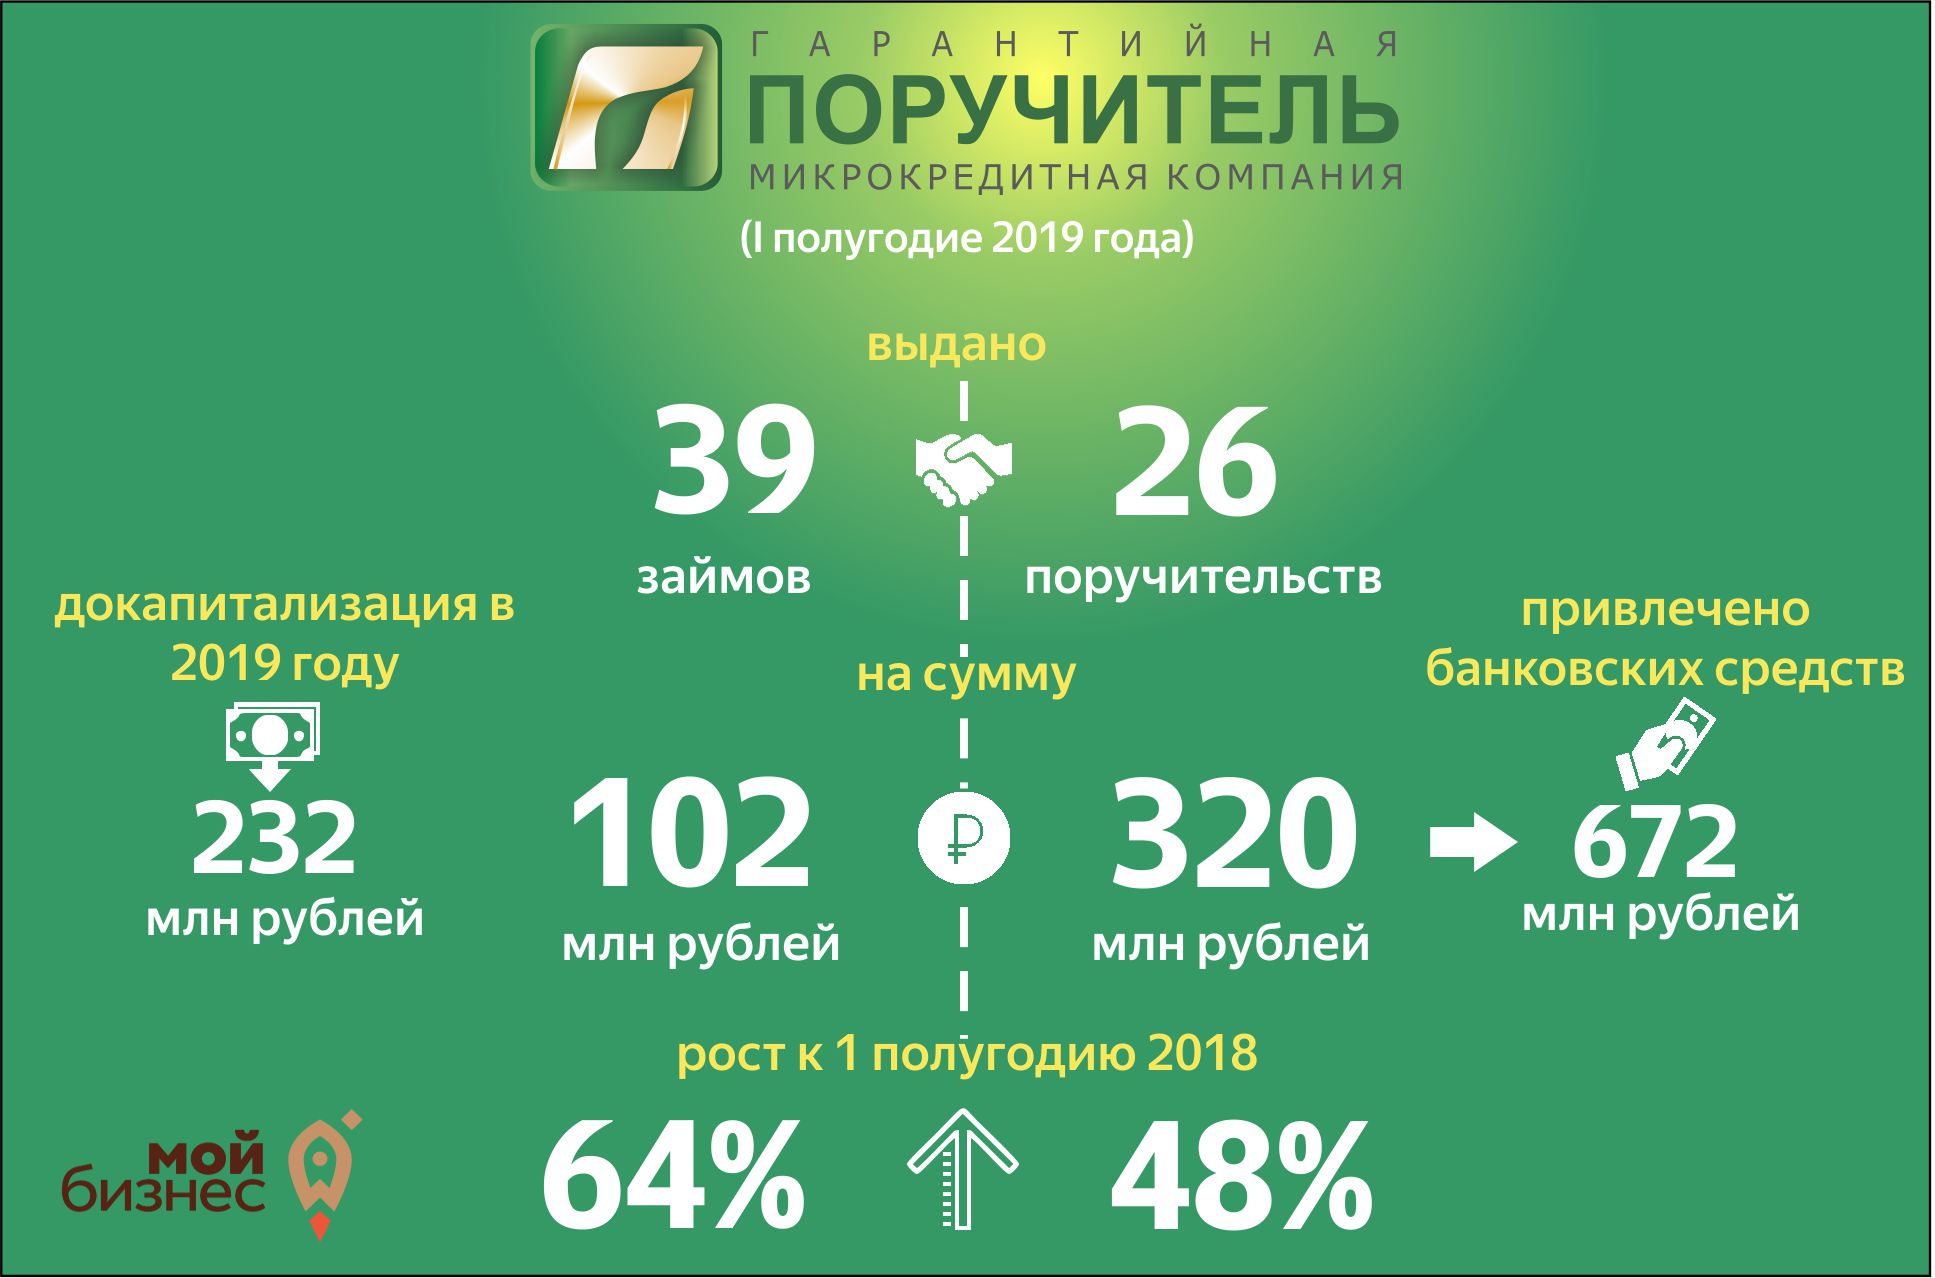 В первой половине текущего года фонд «Поручитель» оказал гарантийную поддержку бизнесу на 320 миллионов рублей